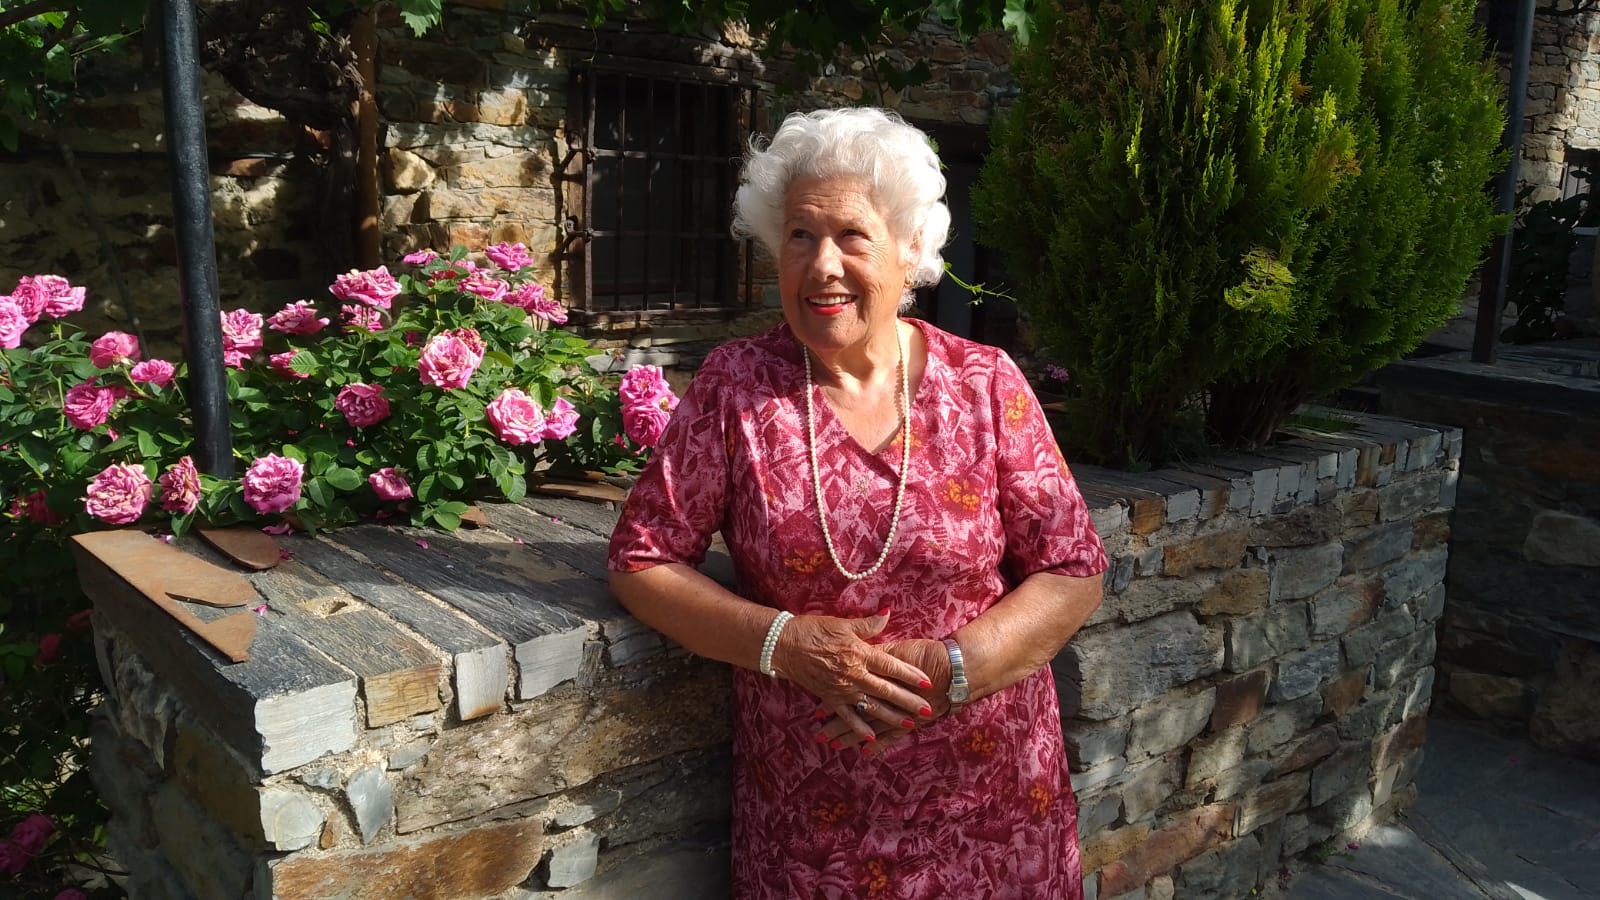 Charito, candidata a alcaldesa con 99 años: “Me gustaría ser como Fraga”